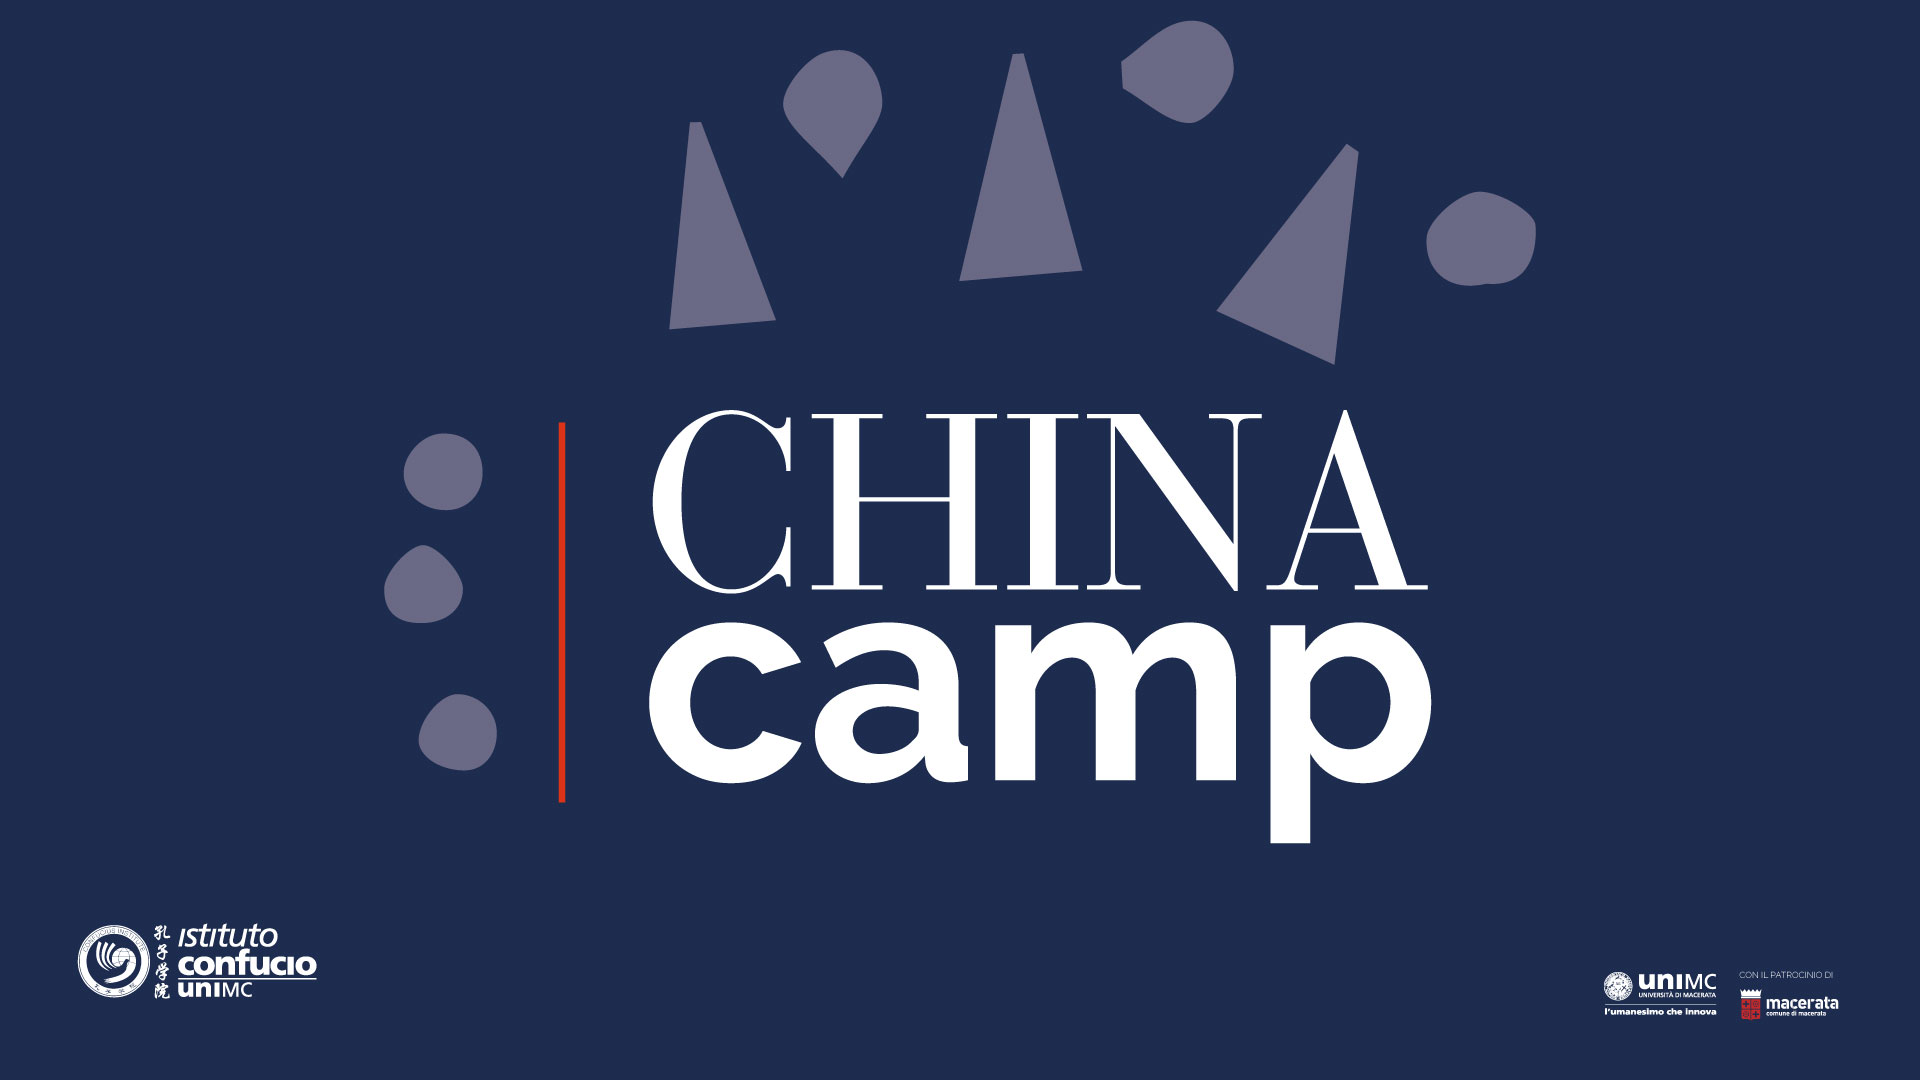 China Camp - Capodanno Cinese 2018 - anno del Cane